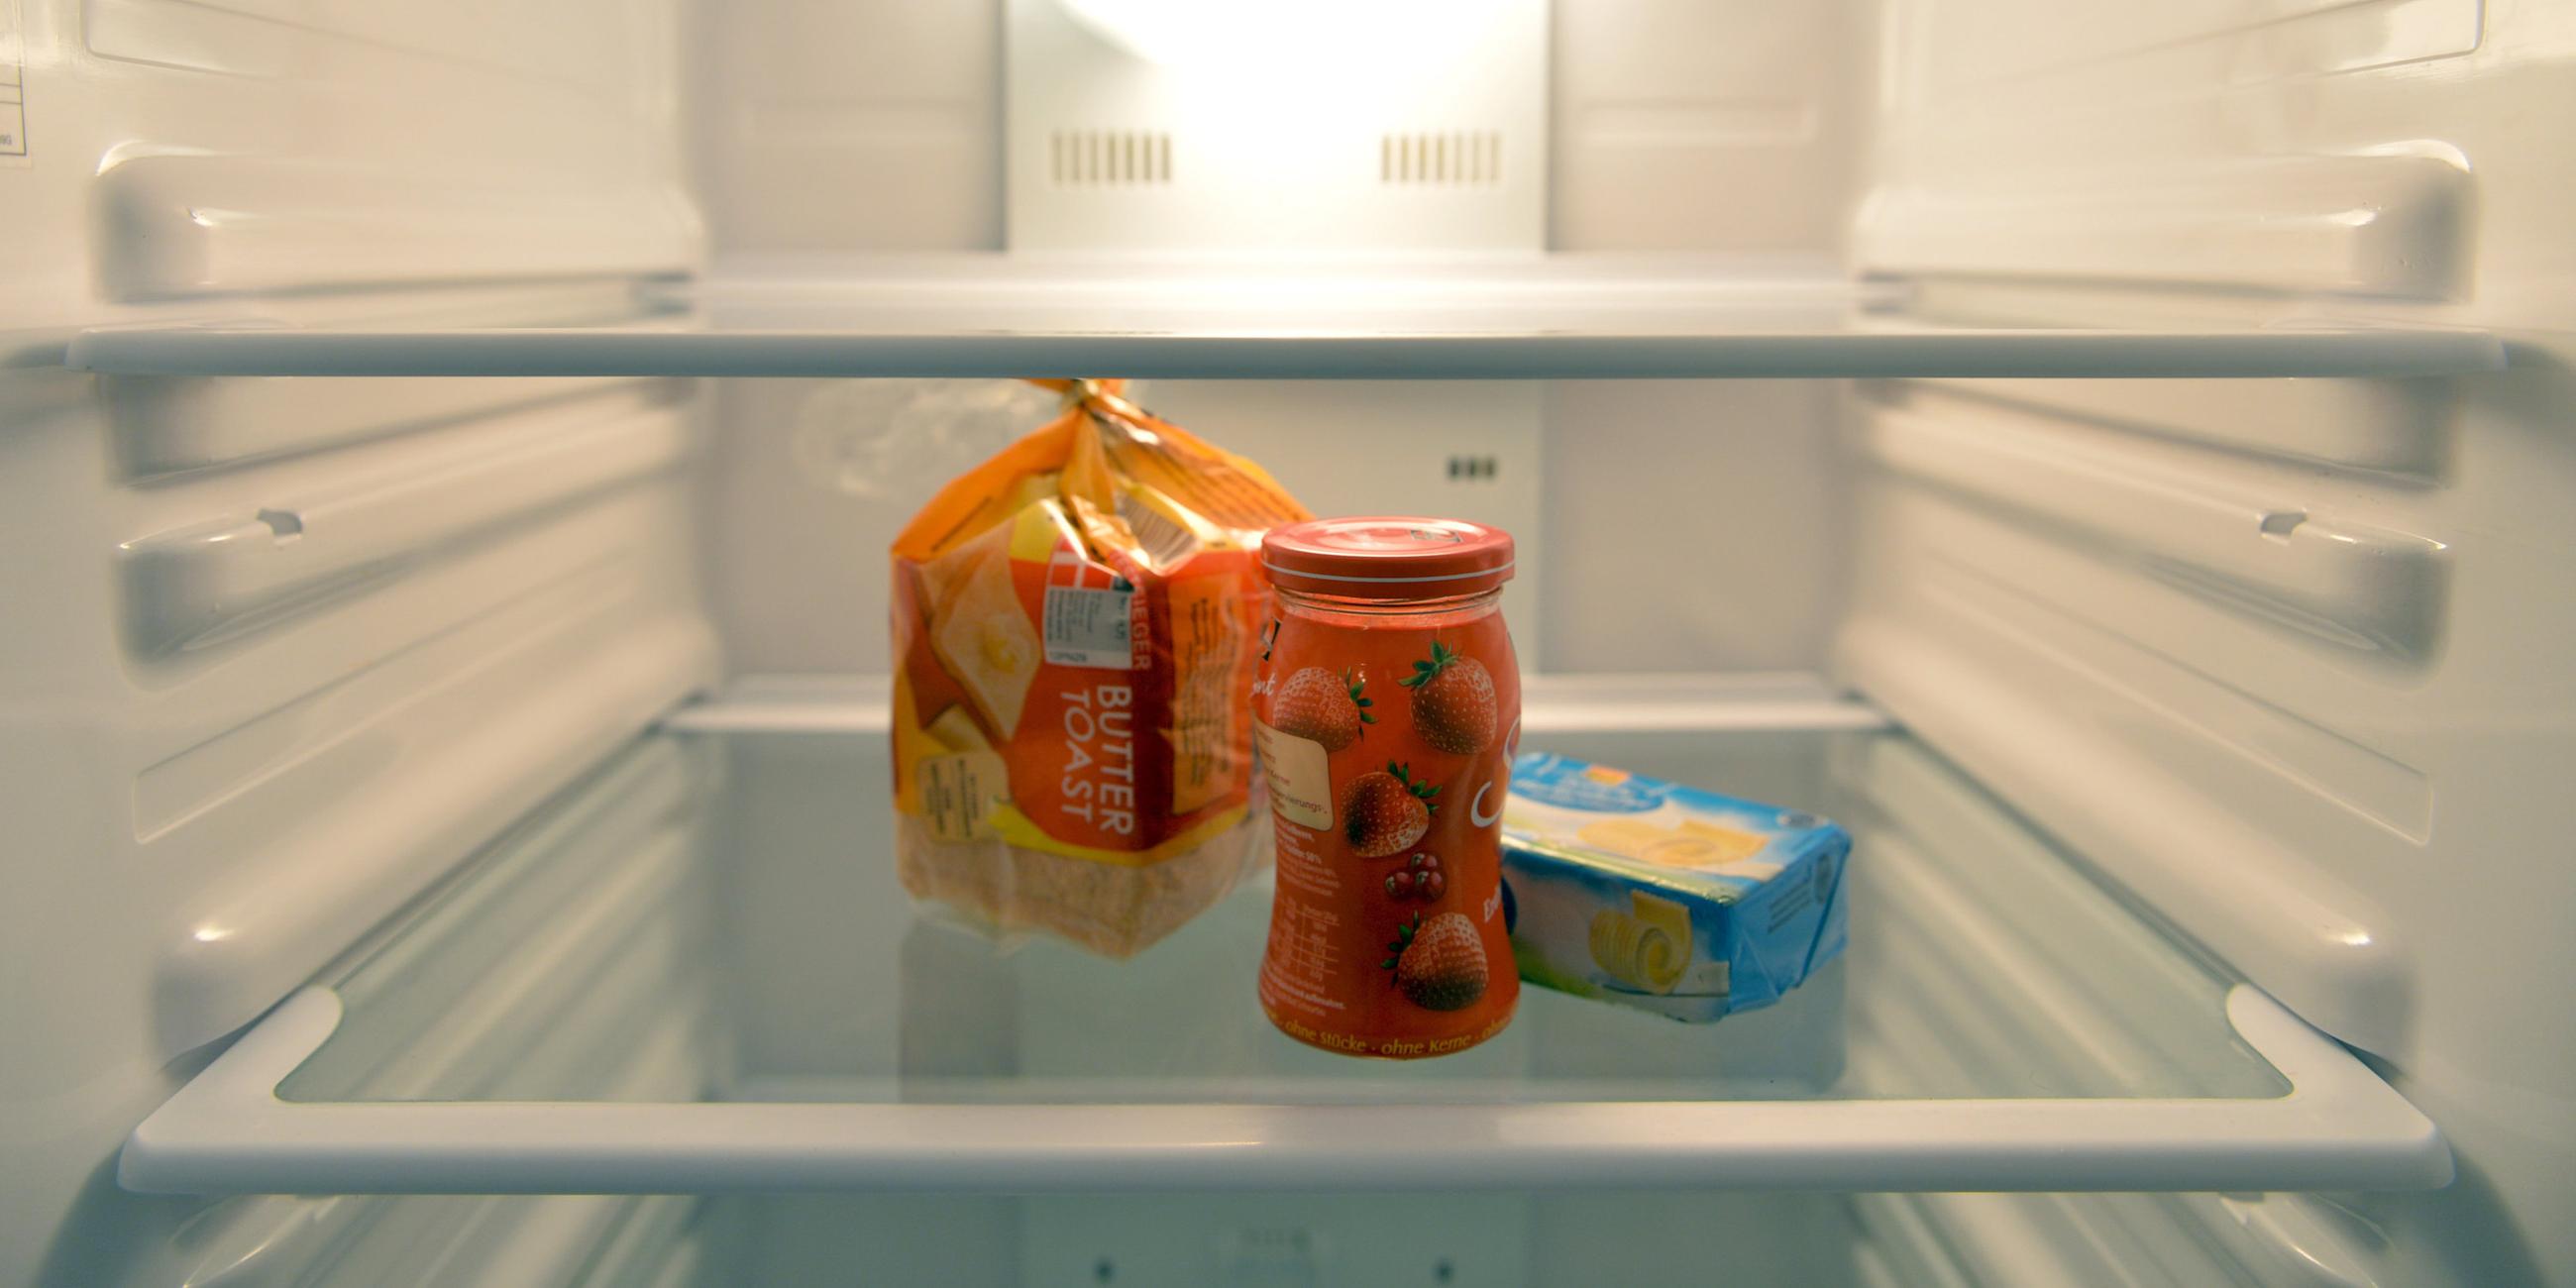 Man sieht einen fast leeren Kühlschrank, in dem nur noch etwas Toast, Marmelade und Butter steht.